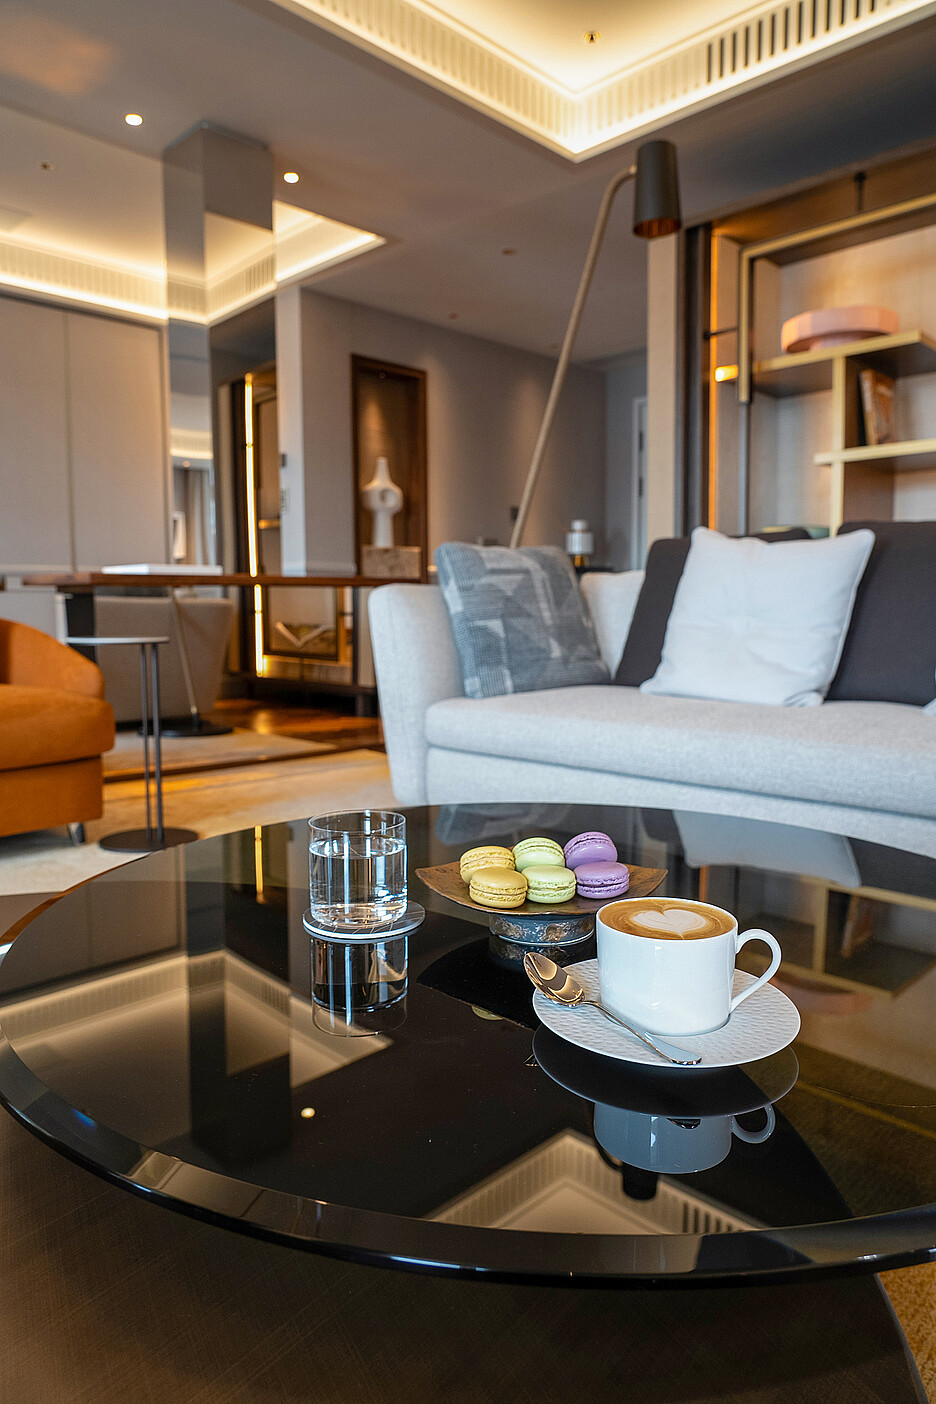 Le plaisir du café dans les chambres et les suites – cela fait partie du service légendaire du Mandarin Oriental Savoy.